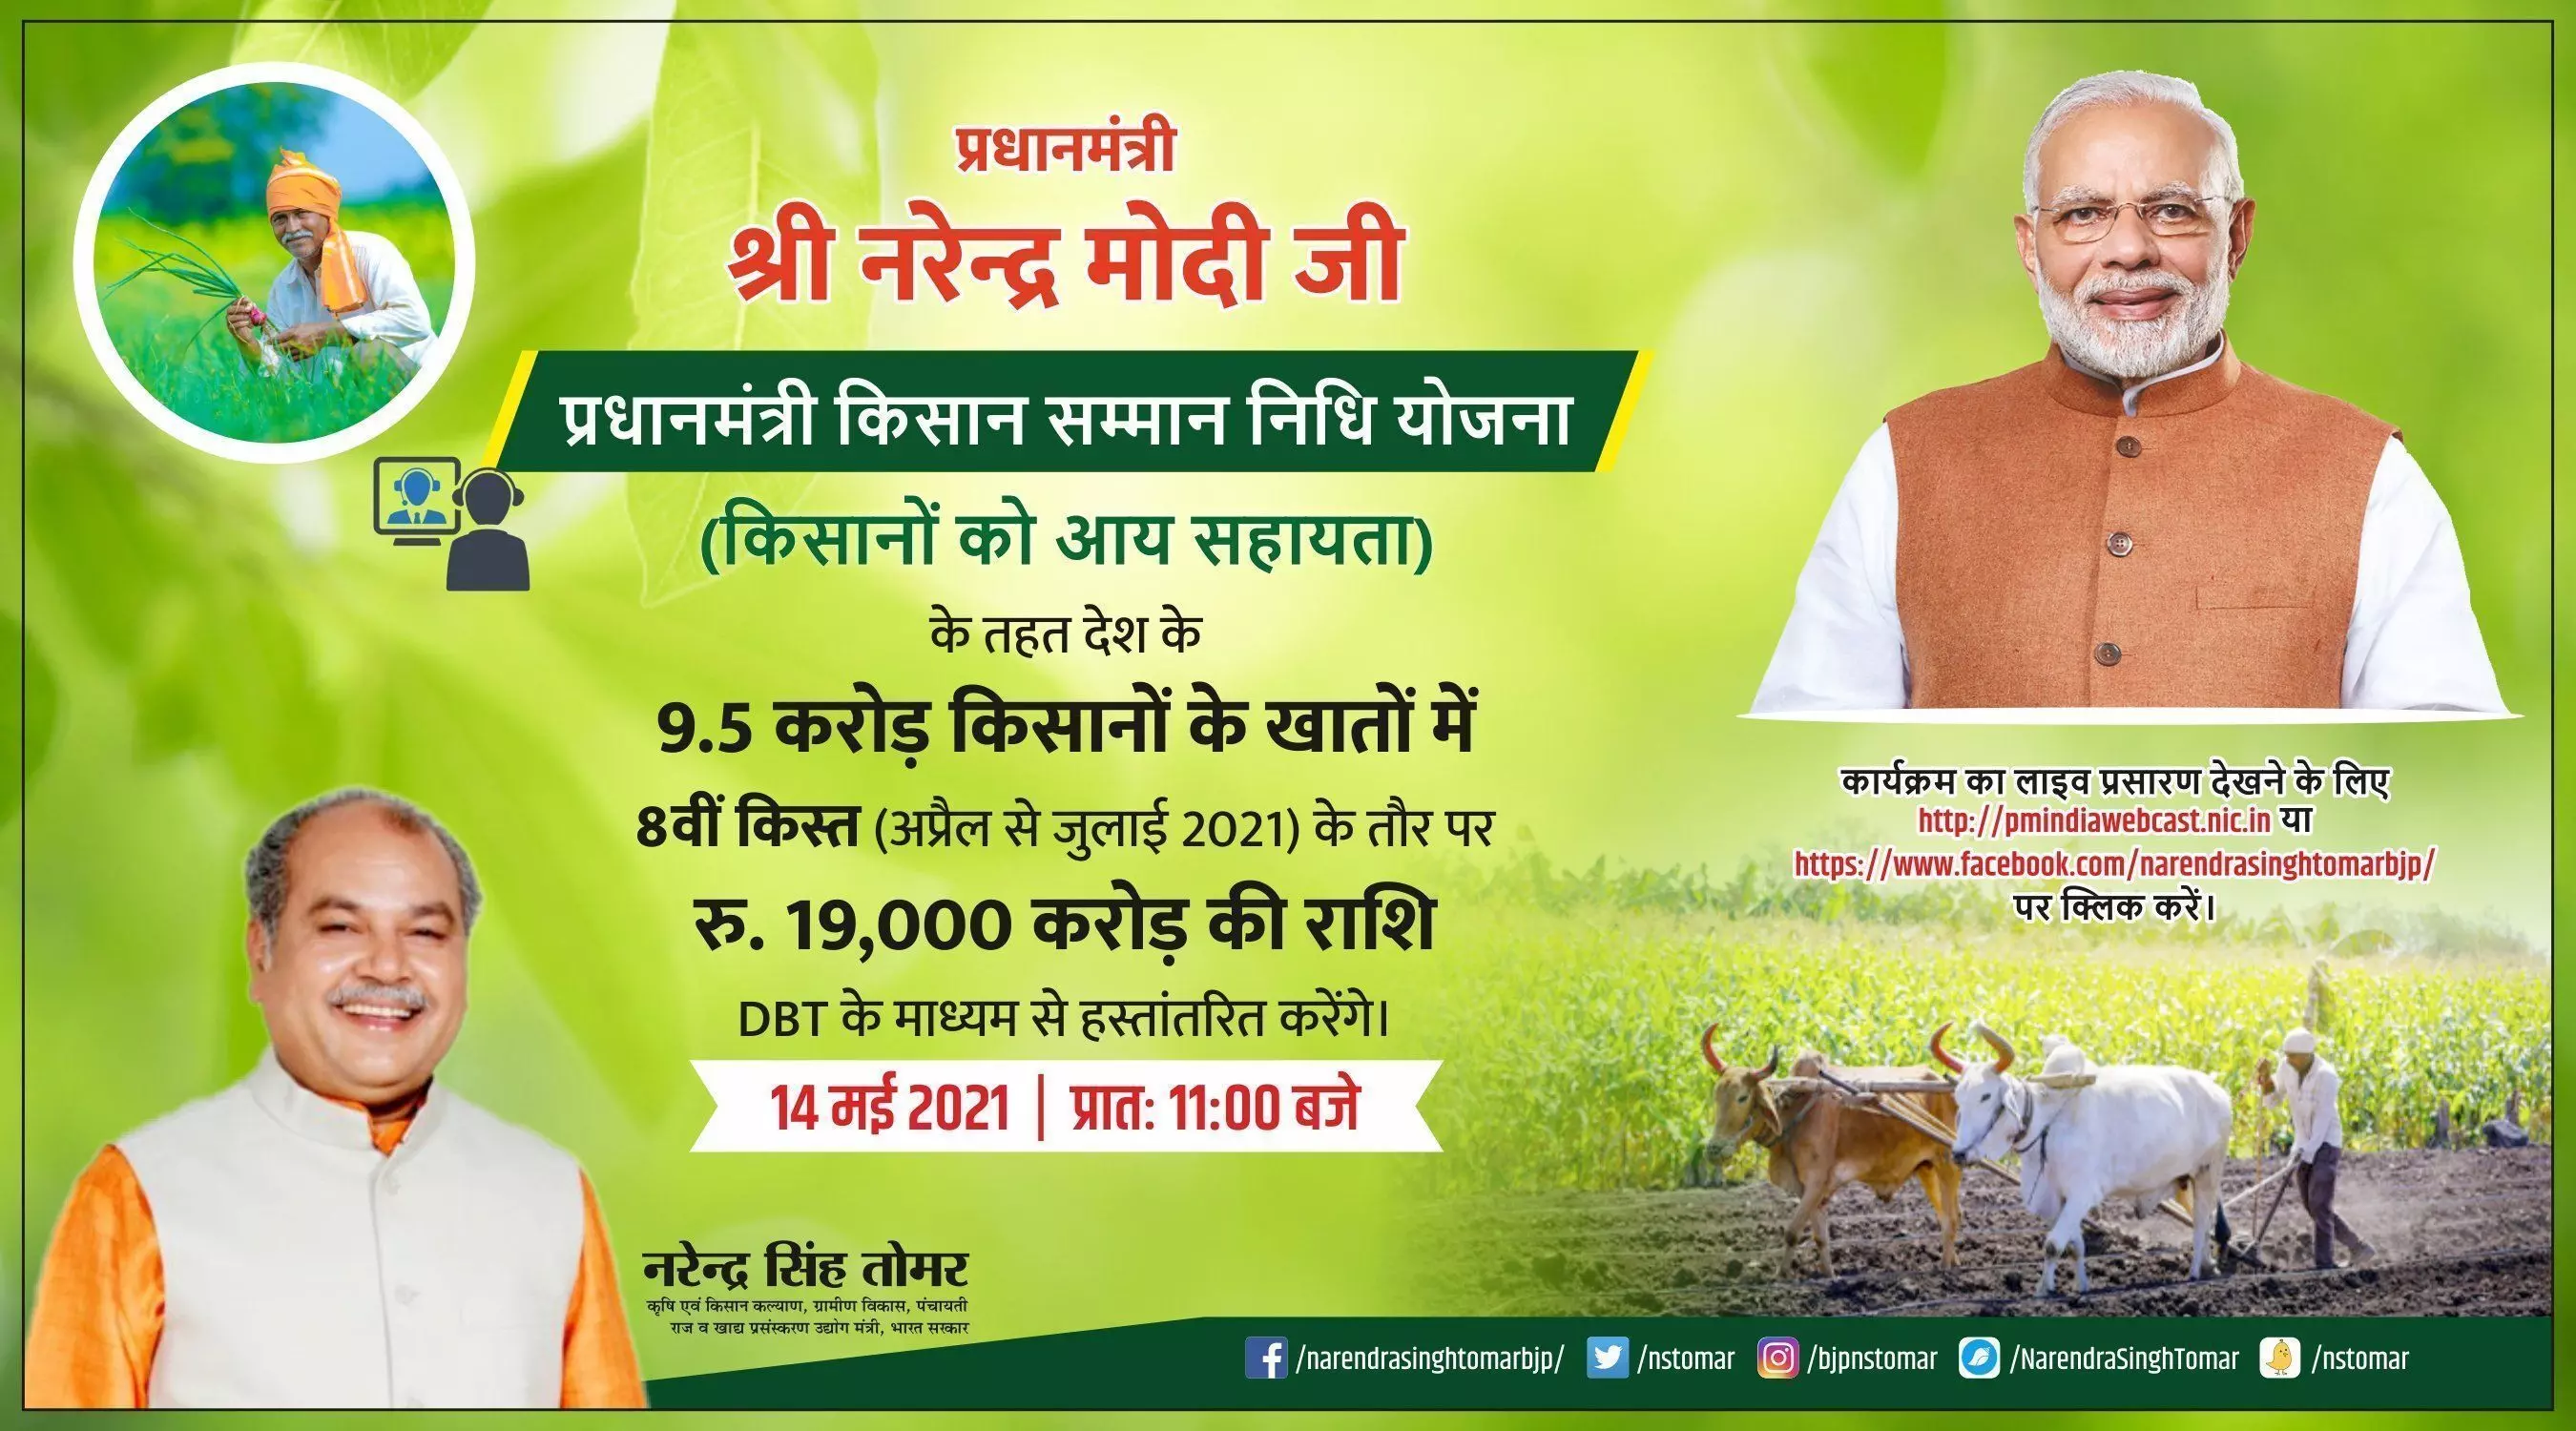 PM Kisan: आज 9.5 करोड़ किसानों के खाते में आएंगे 2000 रुपये, इस लिस्ट में चेक करें अपना नाम